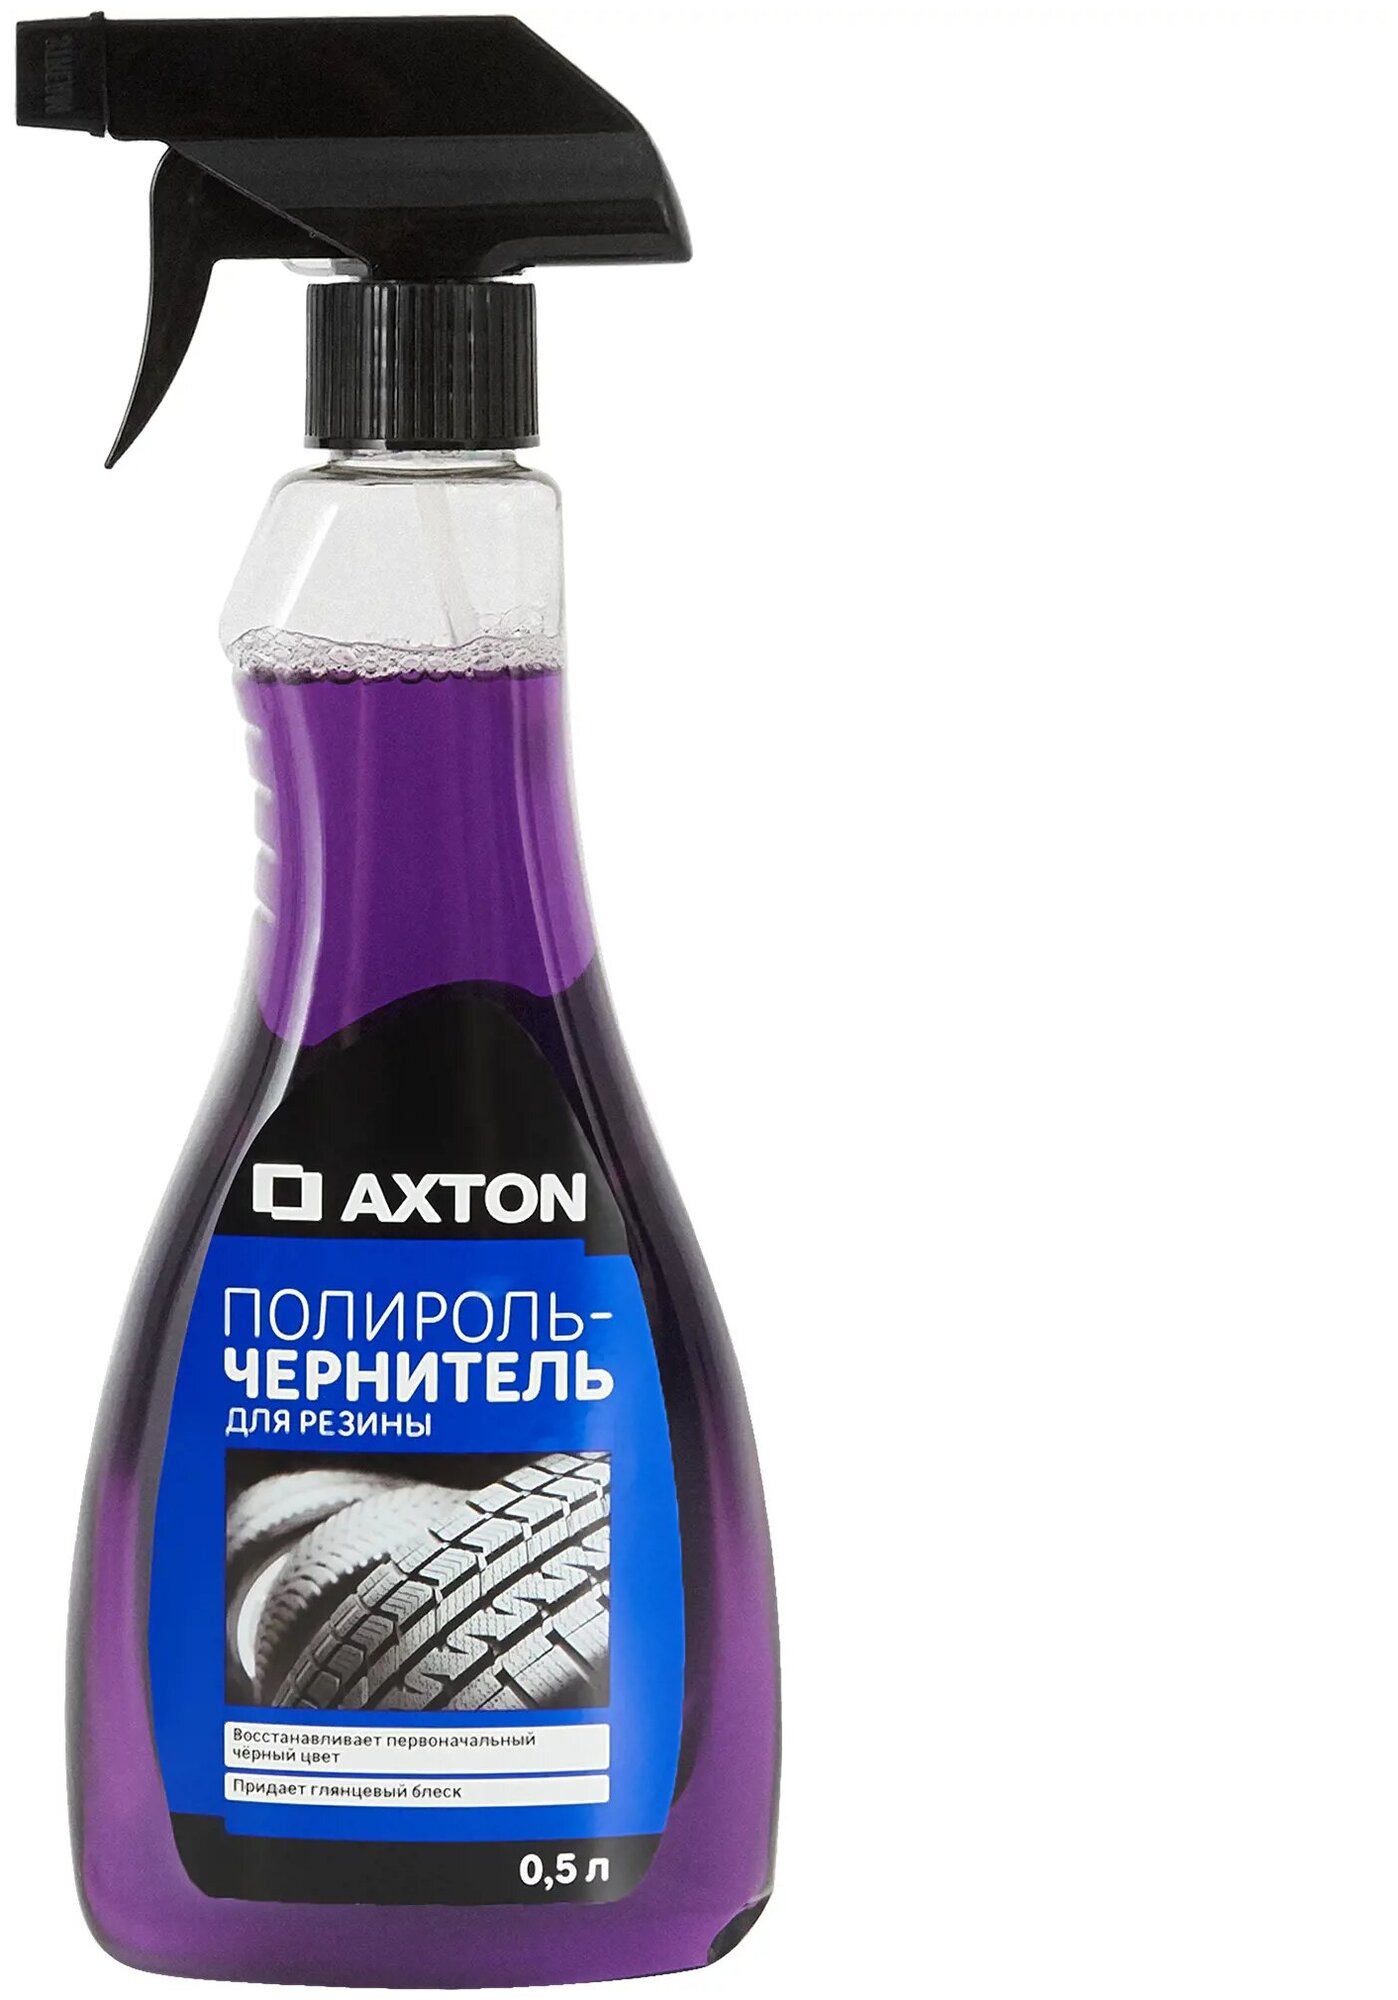 Полироль-чернитель для резины Axton 0.5 л (83973129)